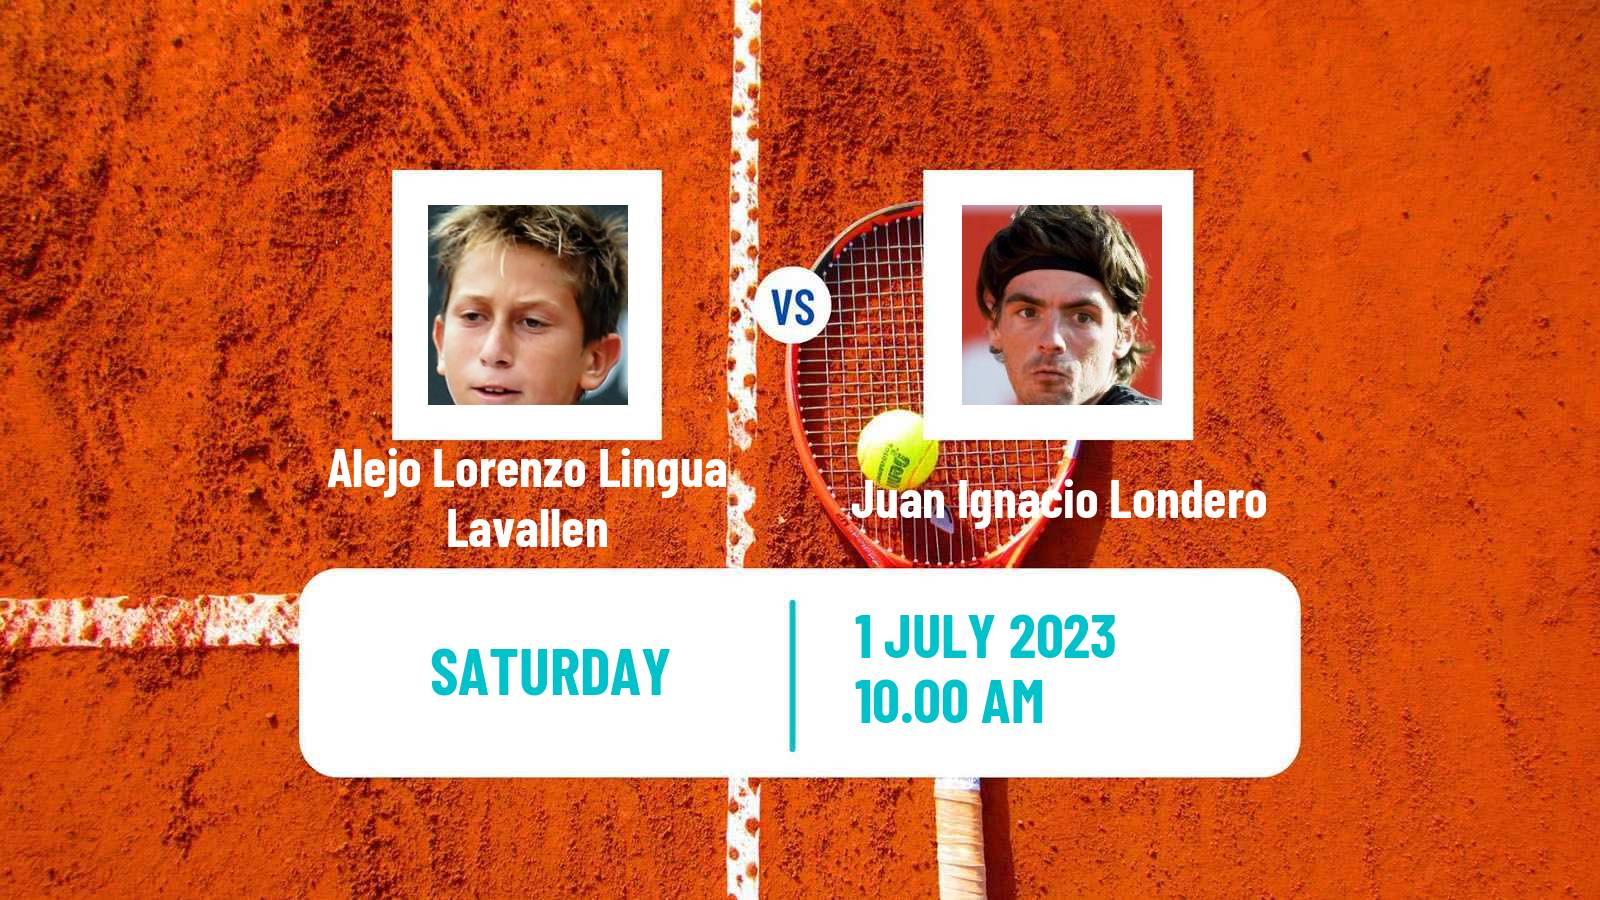 Tennis ITF M25 Rosario Santa Fe Men Alejo Lorenzo Lingua Lavallen - Juan Ignacio Londero